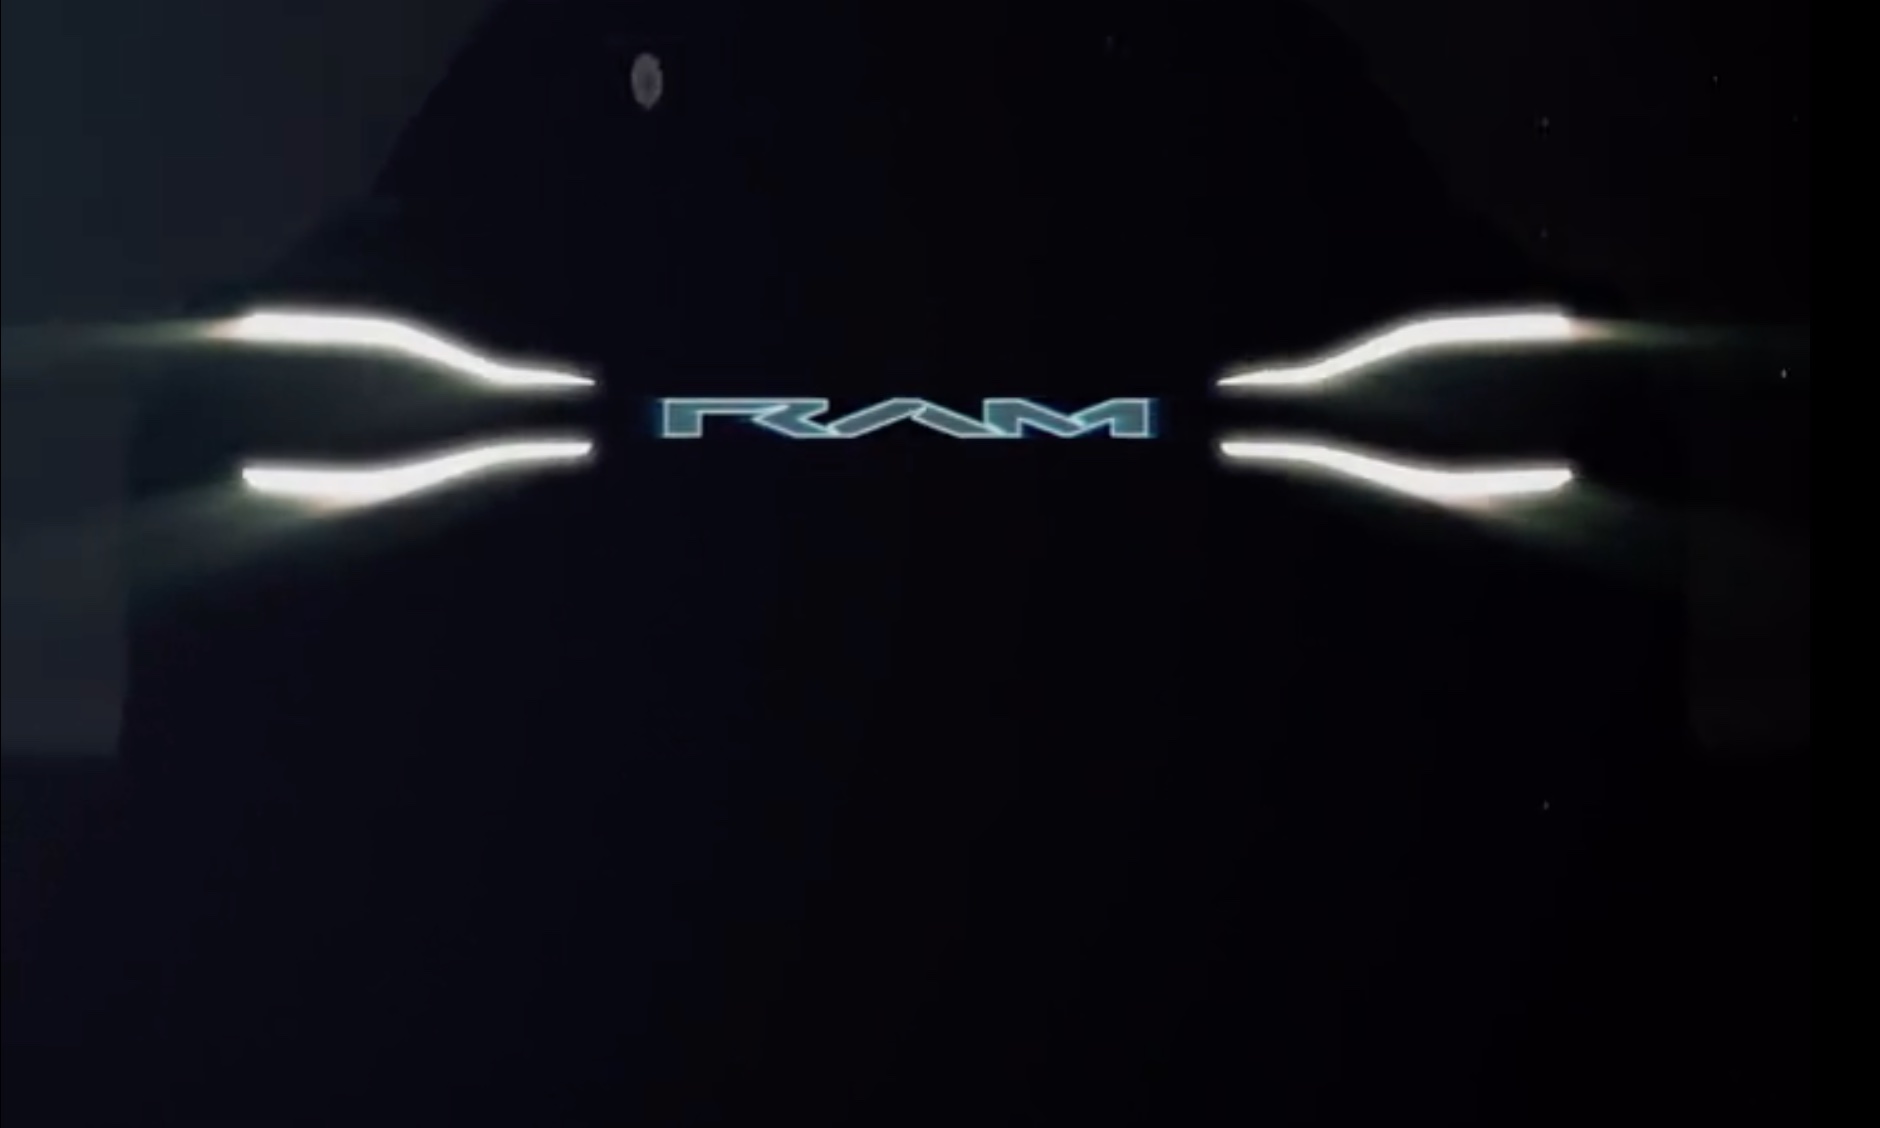 Дебют RAM 1500 BEV назначен на осень 2022 года, тизер показывает Ford F-150 Lightning